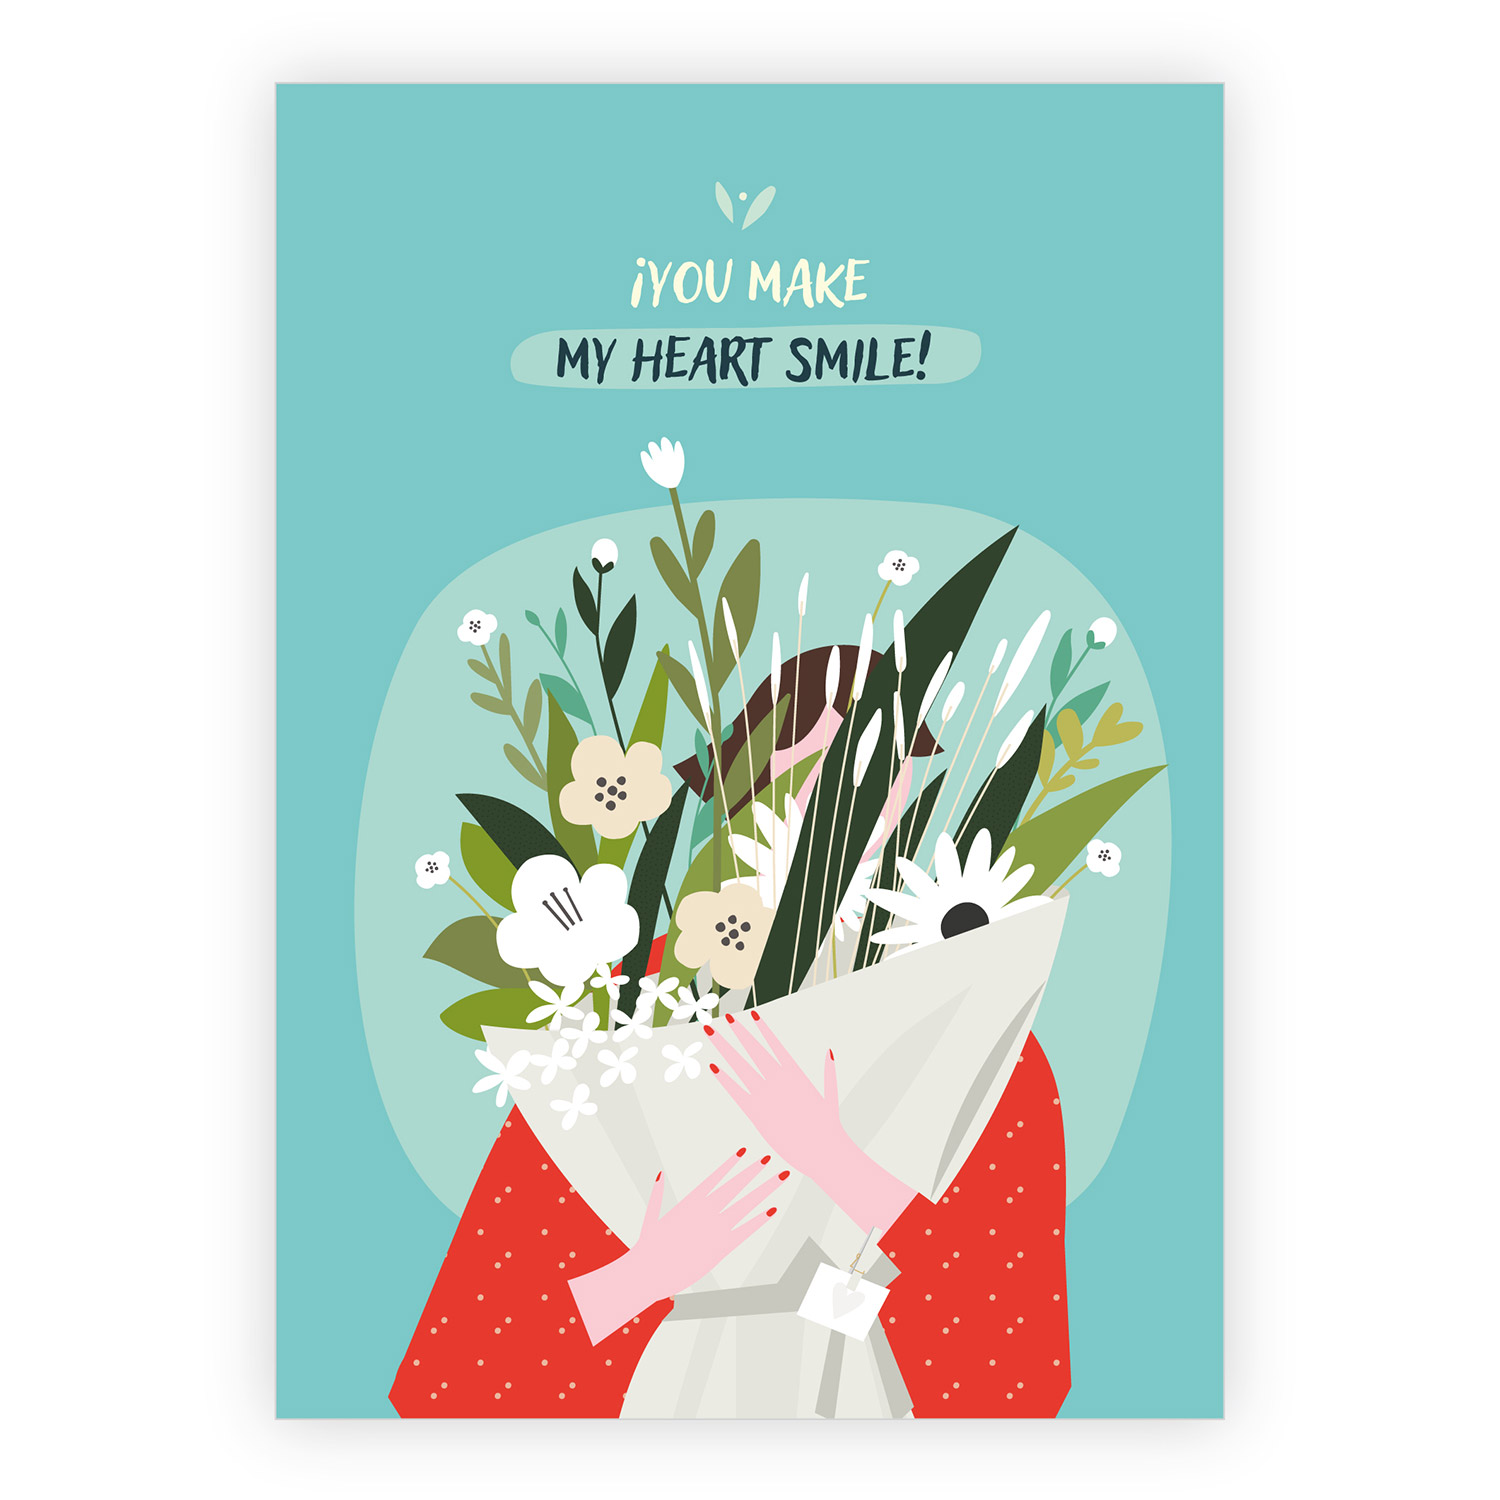 Liebevolle Freundschafts Grußkarte mit  Blumenstrauß: You make my heart smile 1 nachhaltig produzierte Klappkarte  inklusive Umschlag made in germany von Kartenkaufrausch.de